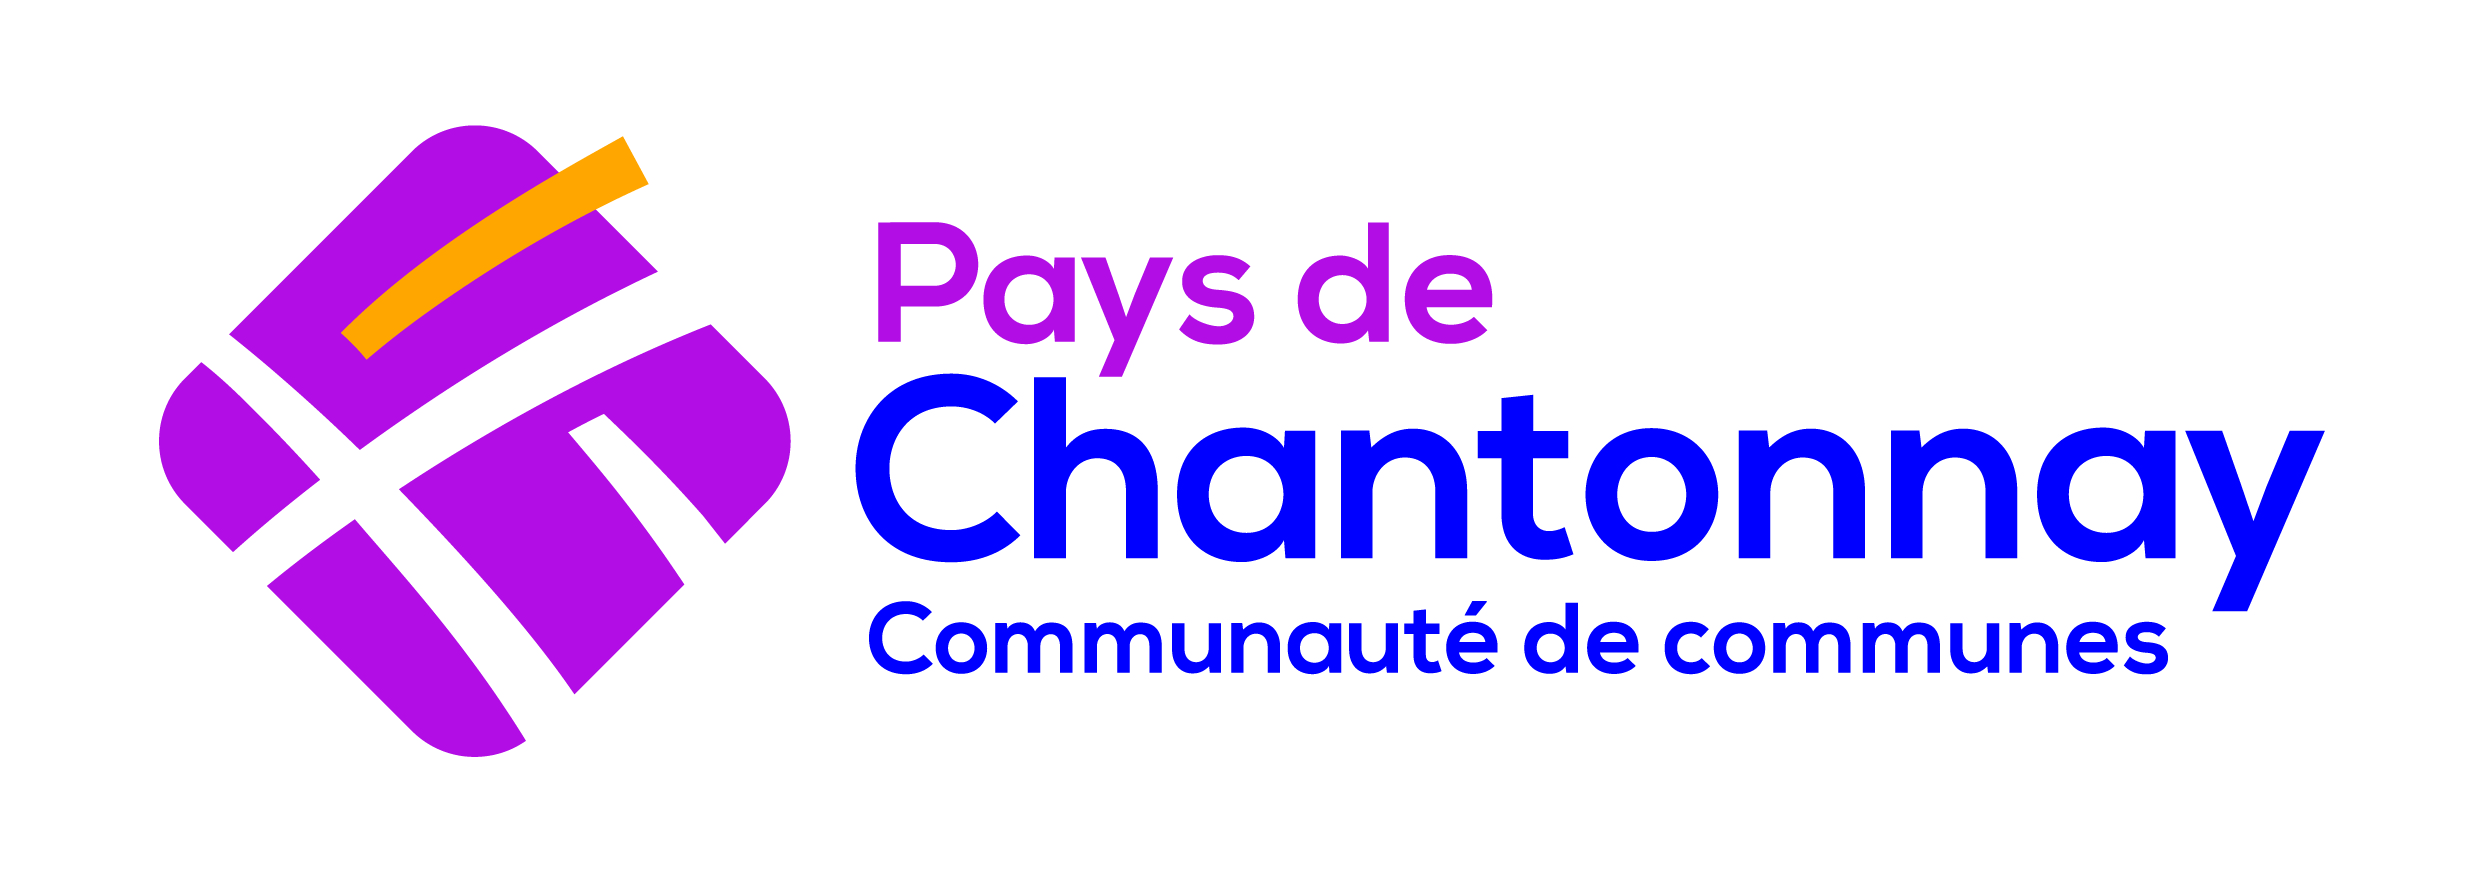 DSP ou gestion (marché public de service) - Communauté de communes du Pays de Chantonnay 